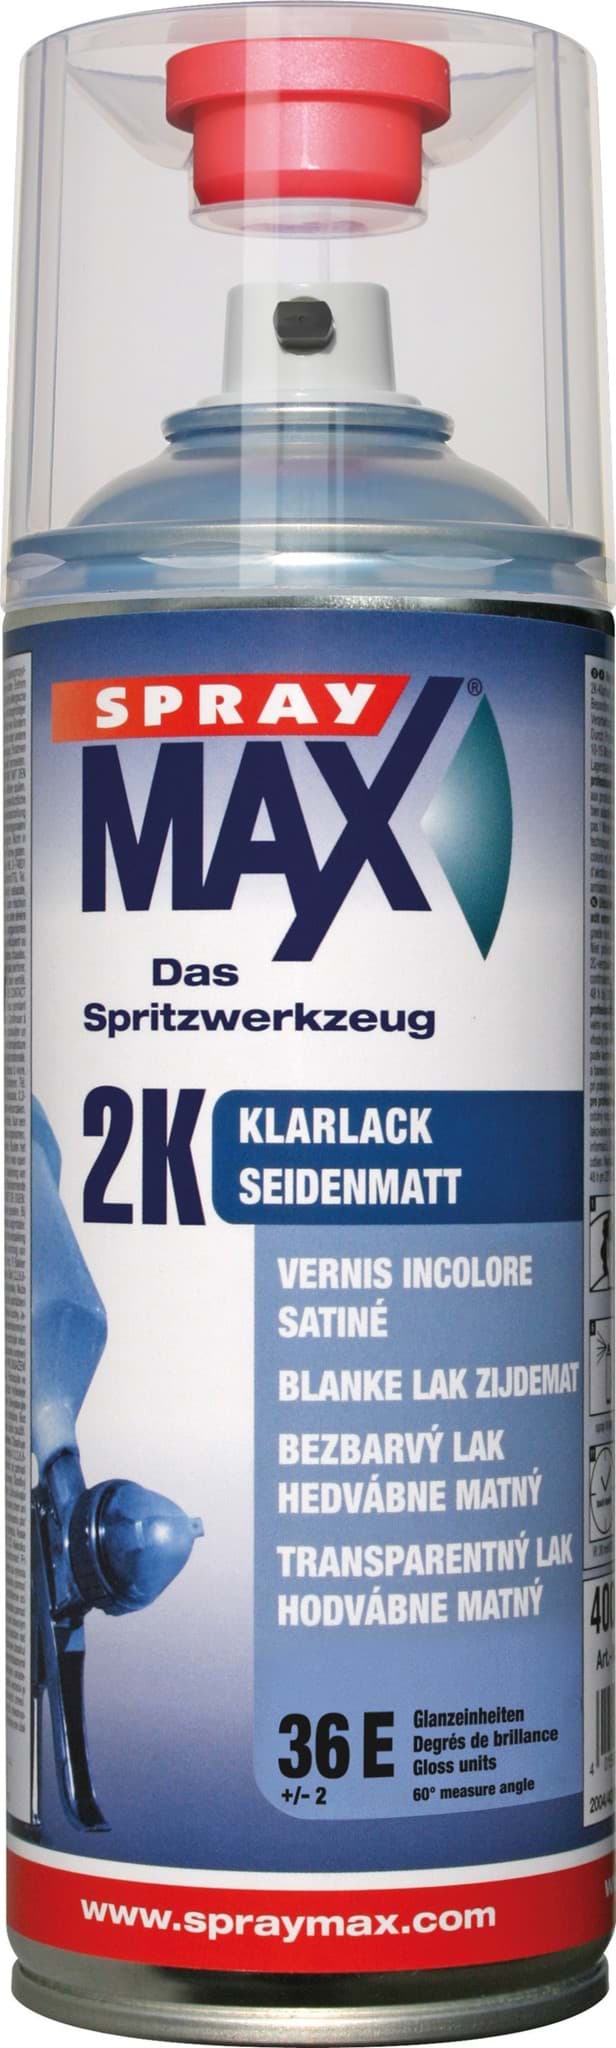 Picture of SprayMax 2K Klarlack seidenmatt 680067